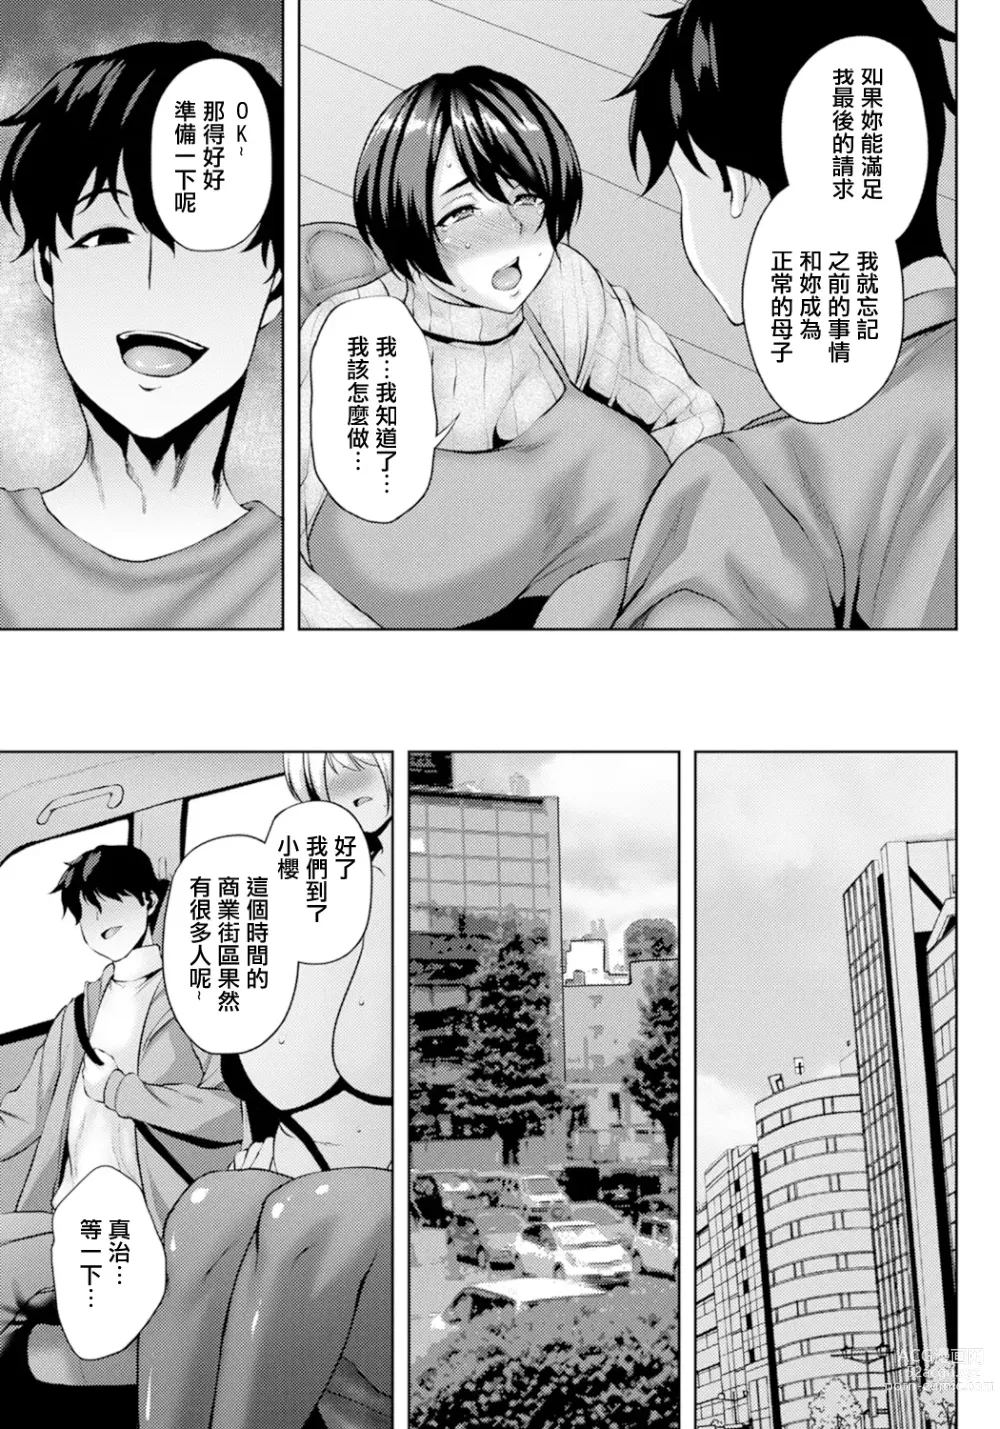 Page 7 of manga 雌繼母的本願